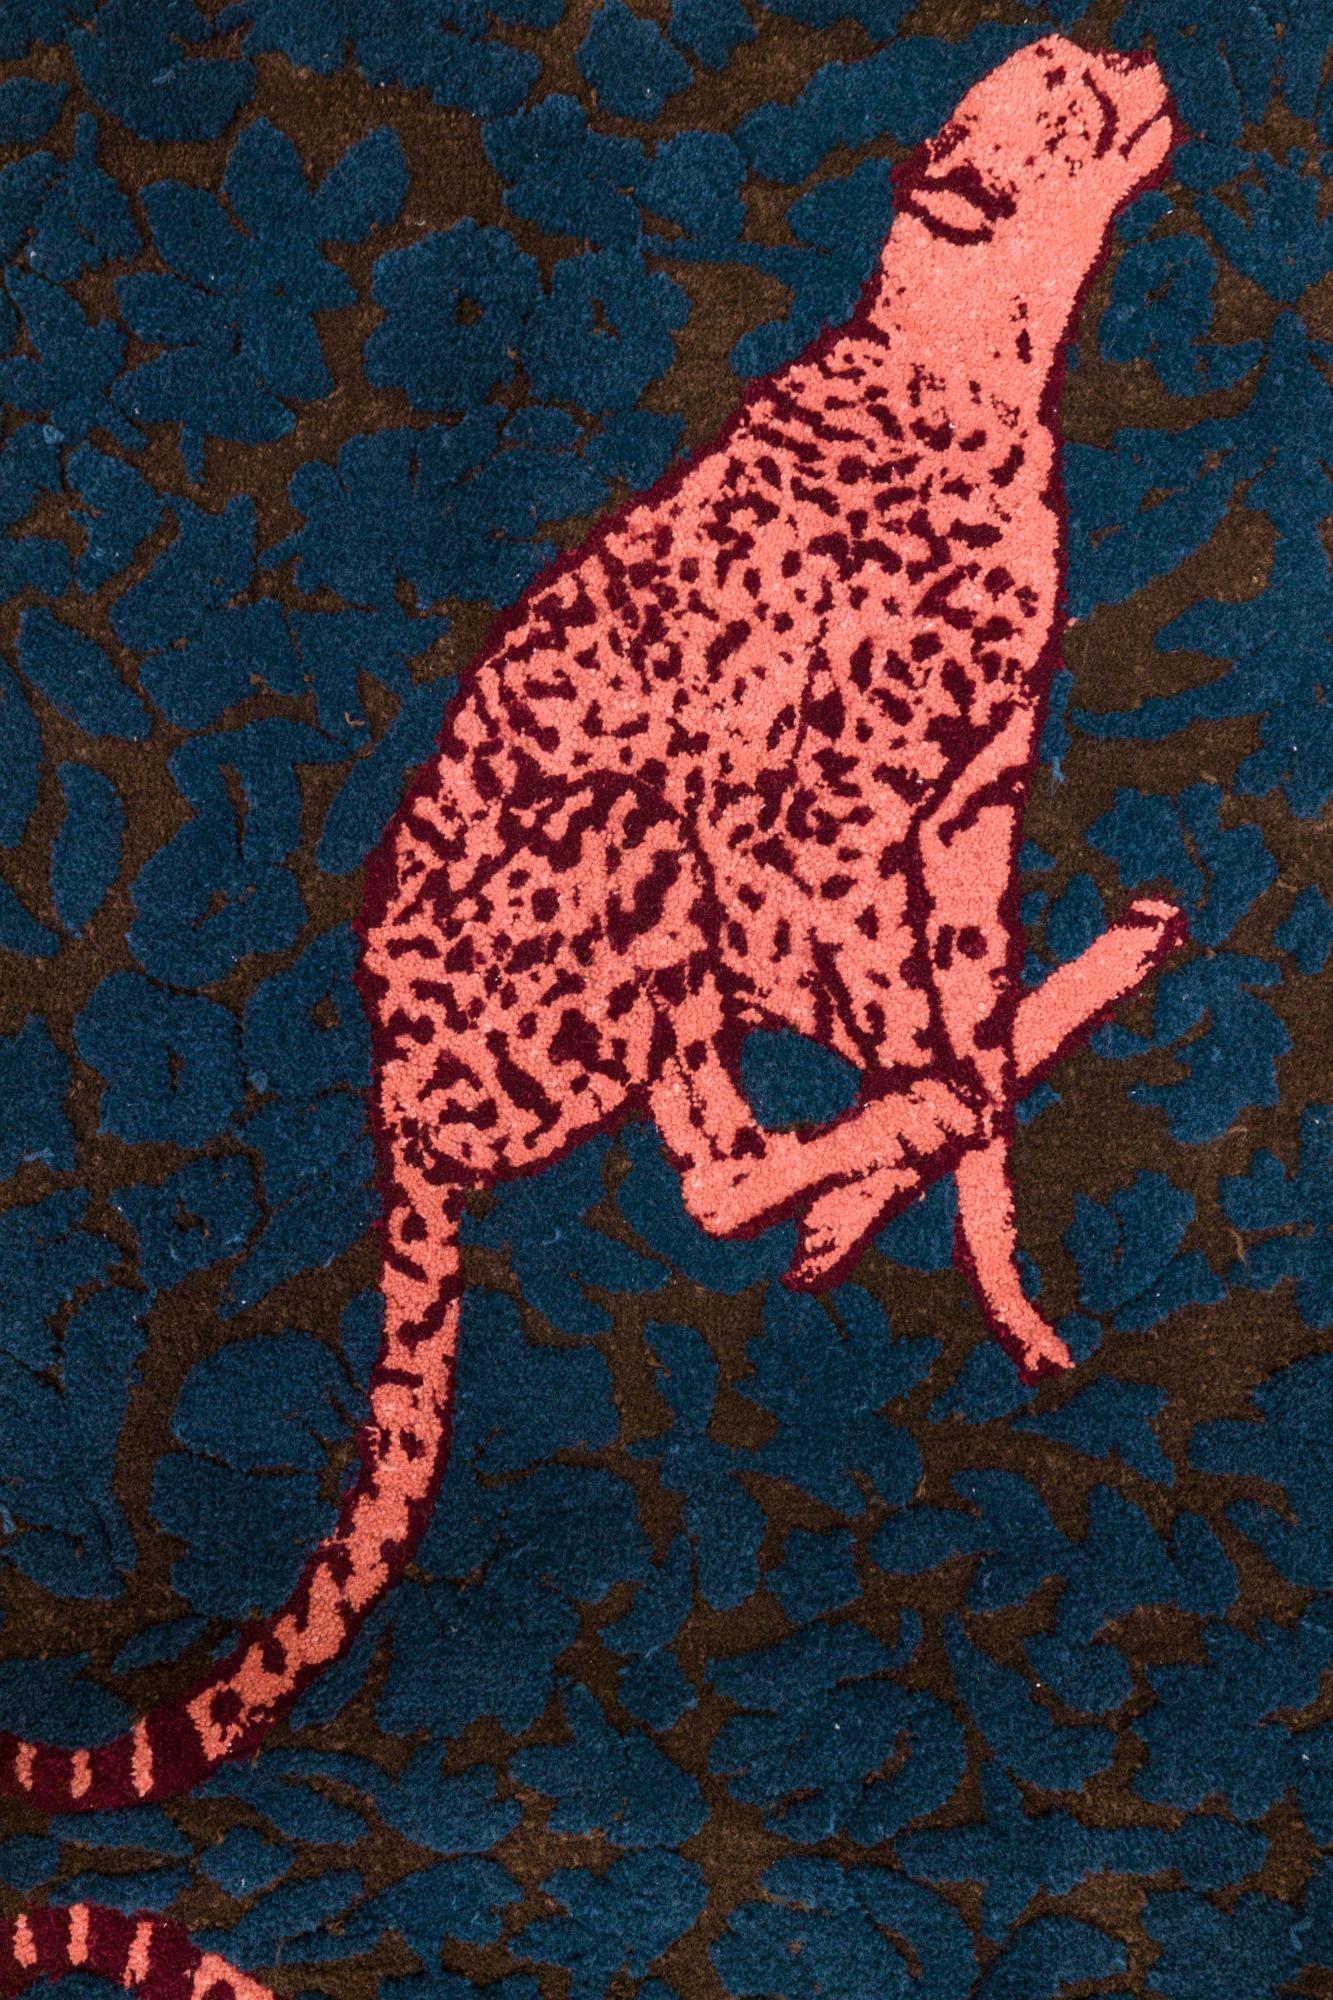 Woven Cheetah Tufted Rug, 